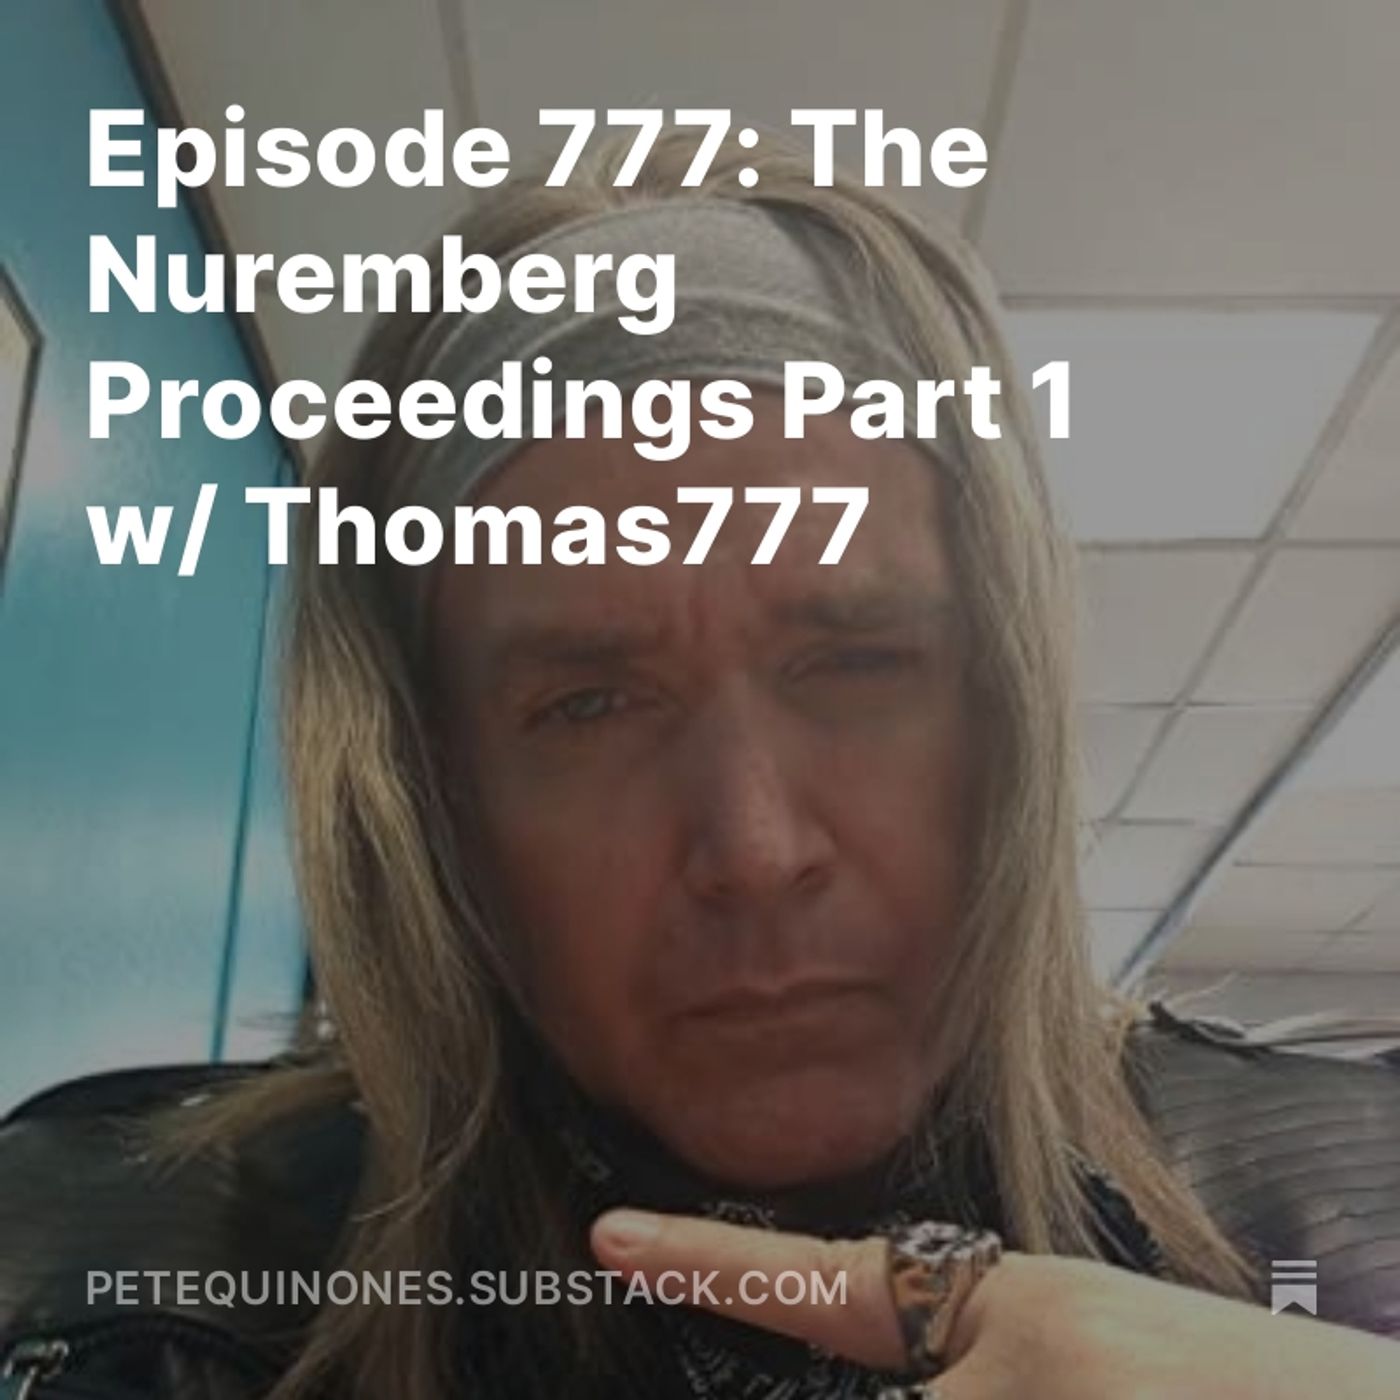 Episode 777: The WW2 Series Part 17 - The Nuremberg Proceedings Part 1 w/ Thomas777